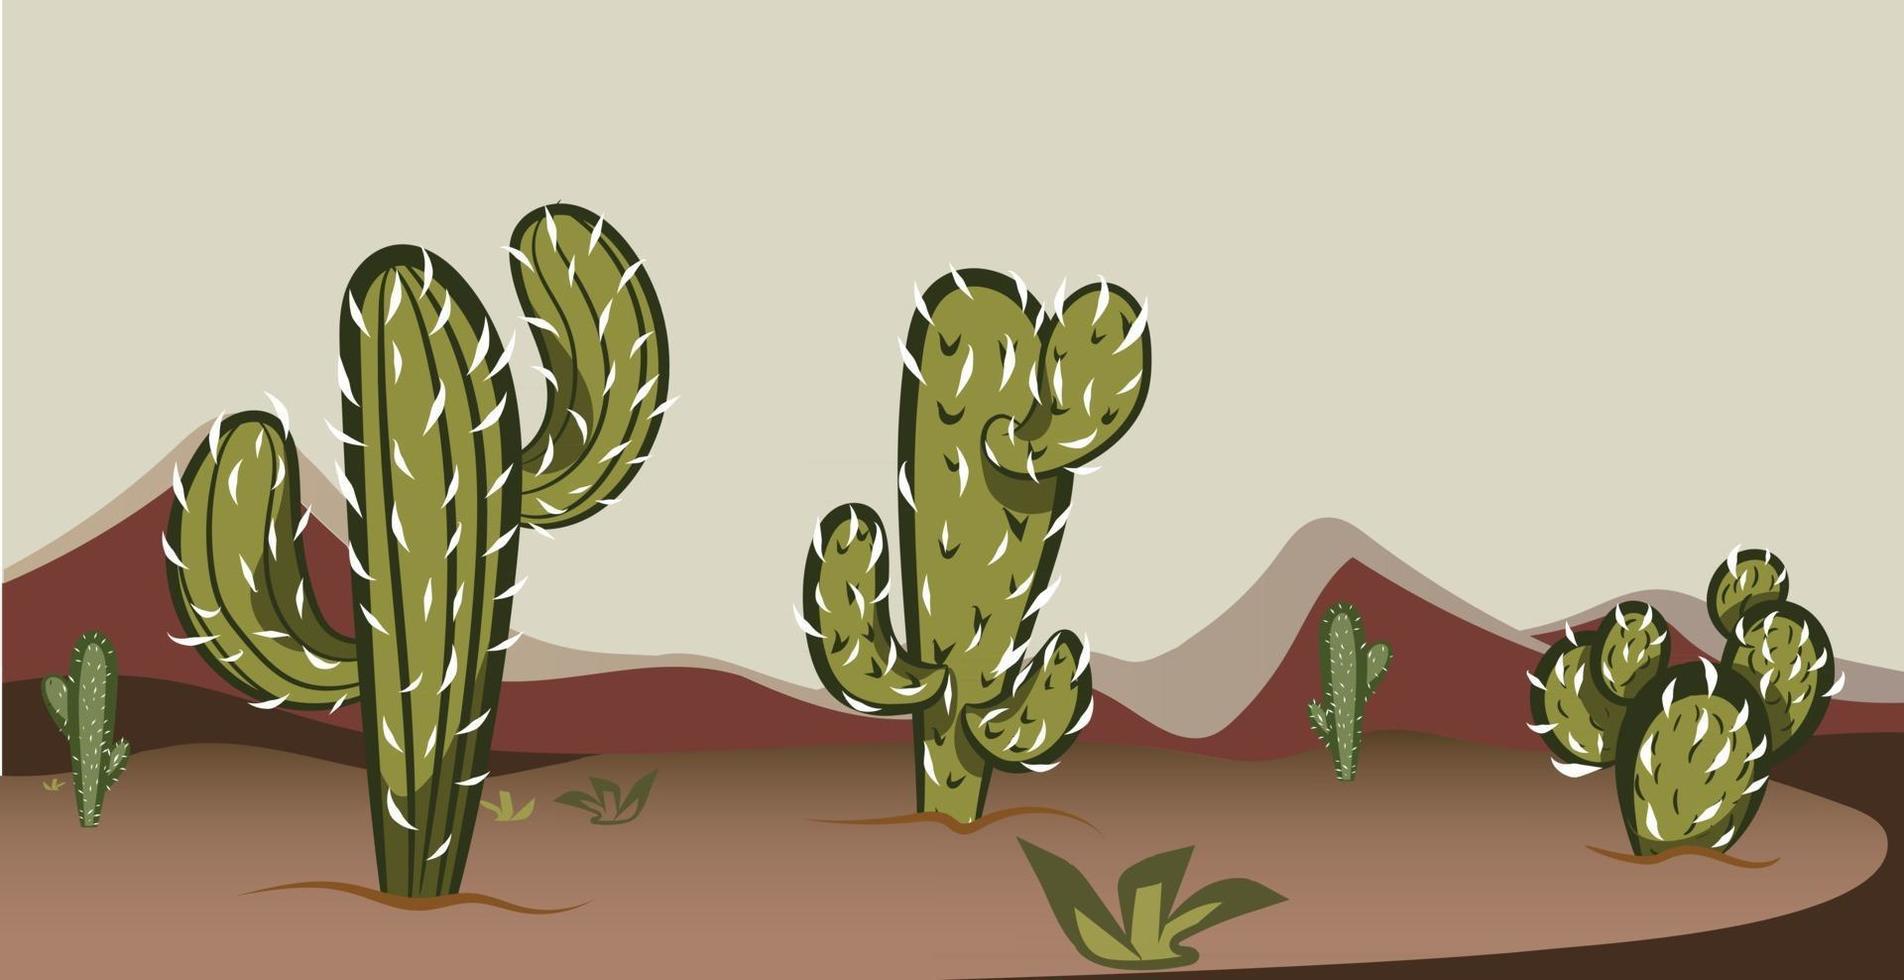 Wild West Texas Desert Scene with Cactus vector